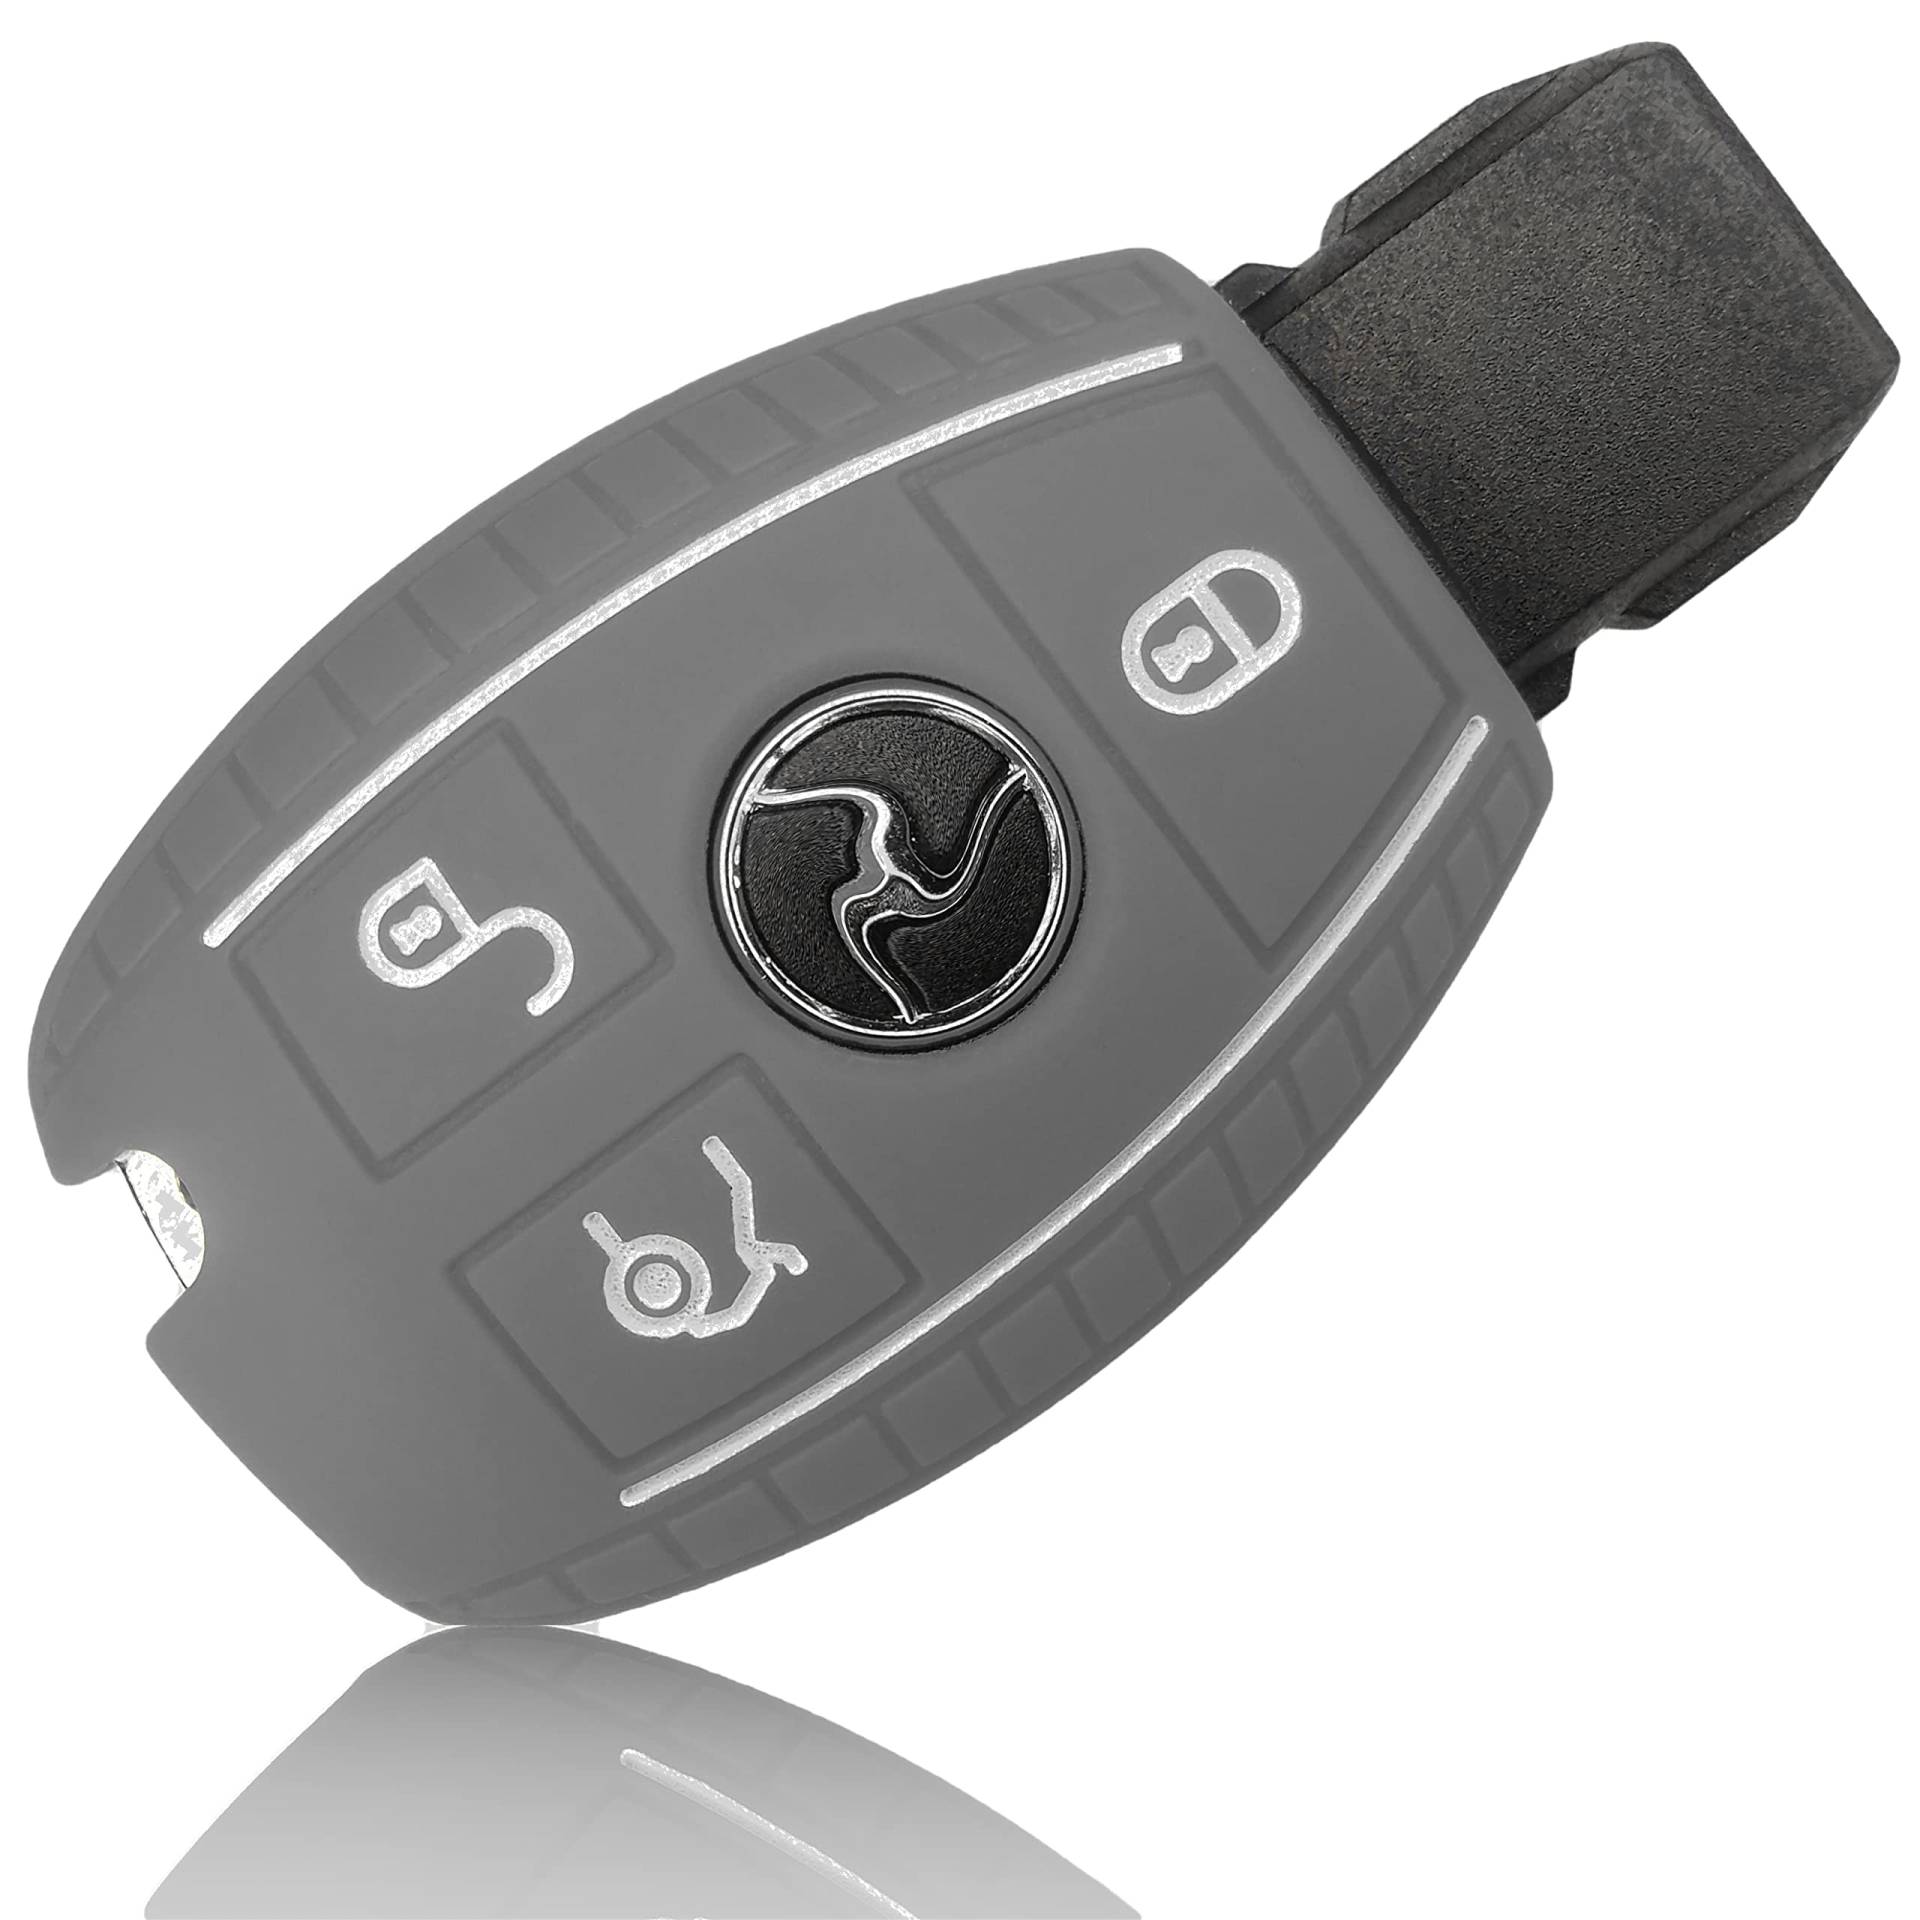 FOAMO Autoschlüssel Hülle kompatibel mit Mercedes Benz 3-Tasten - Silikon Schutzhülle Cover Schlüssel-Hülle in Grau Weiß von FOAMO